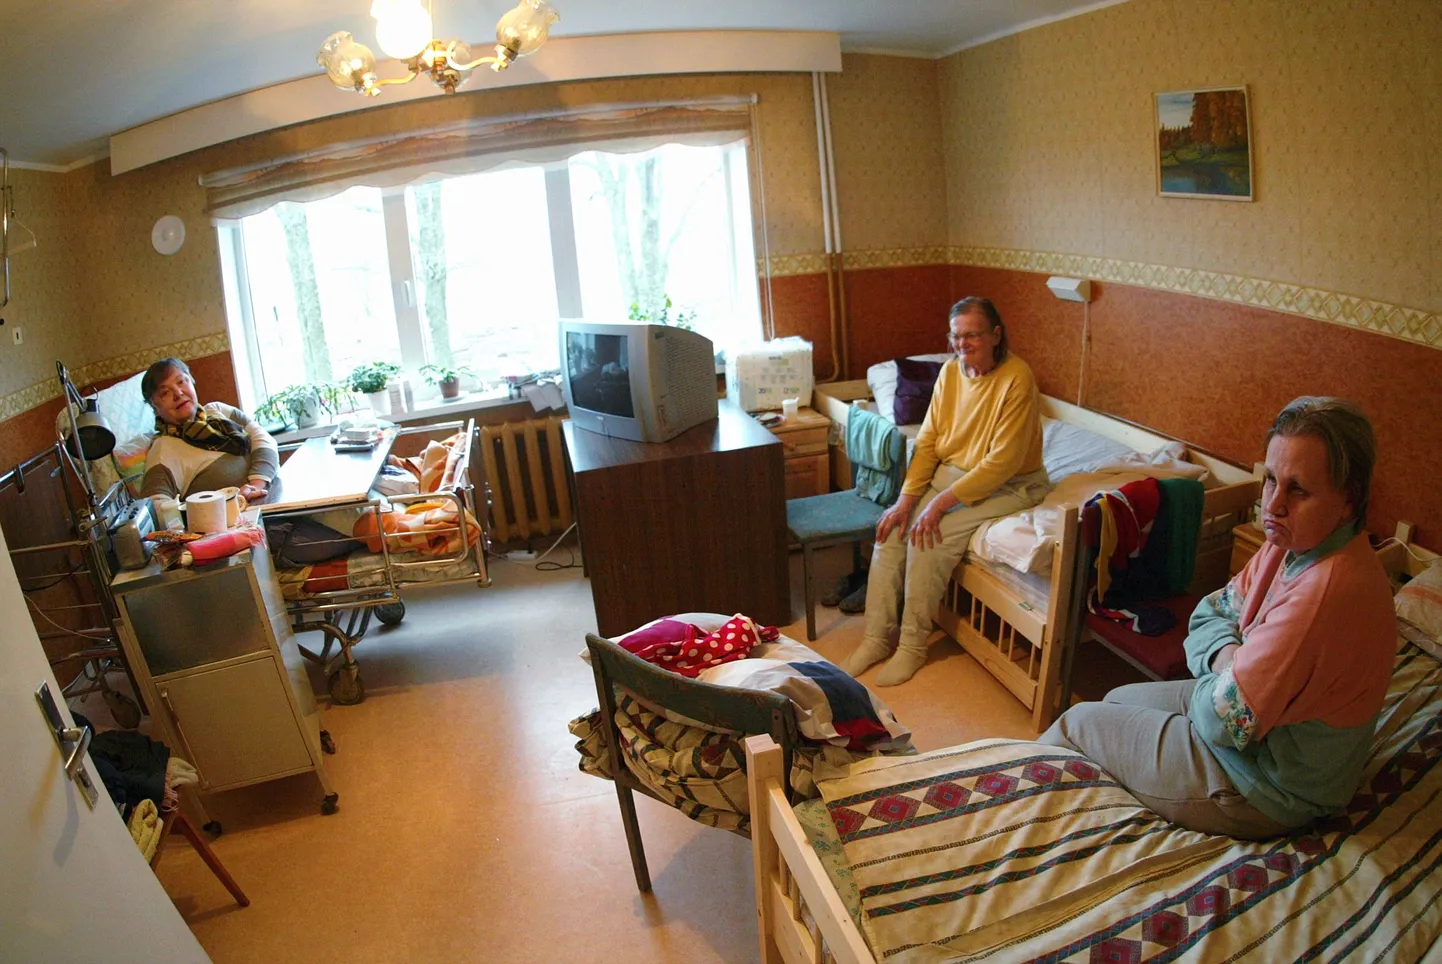 Дома призрения в Эстонии не всегда похожи на красивую картинку из фильма, однако их пациенты сыты и обихожены.